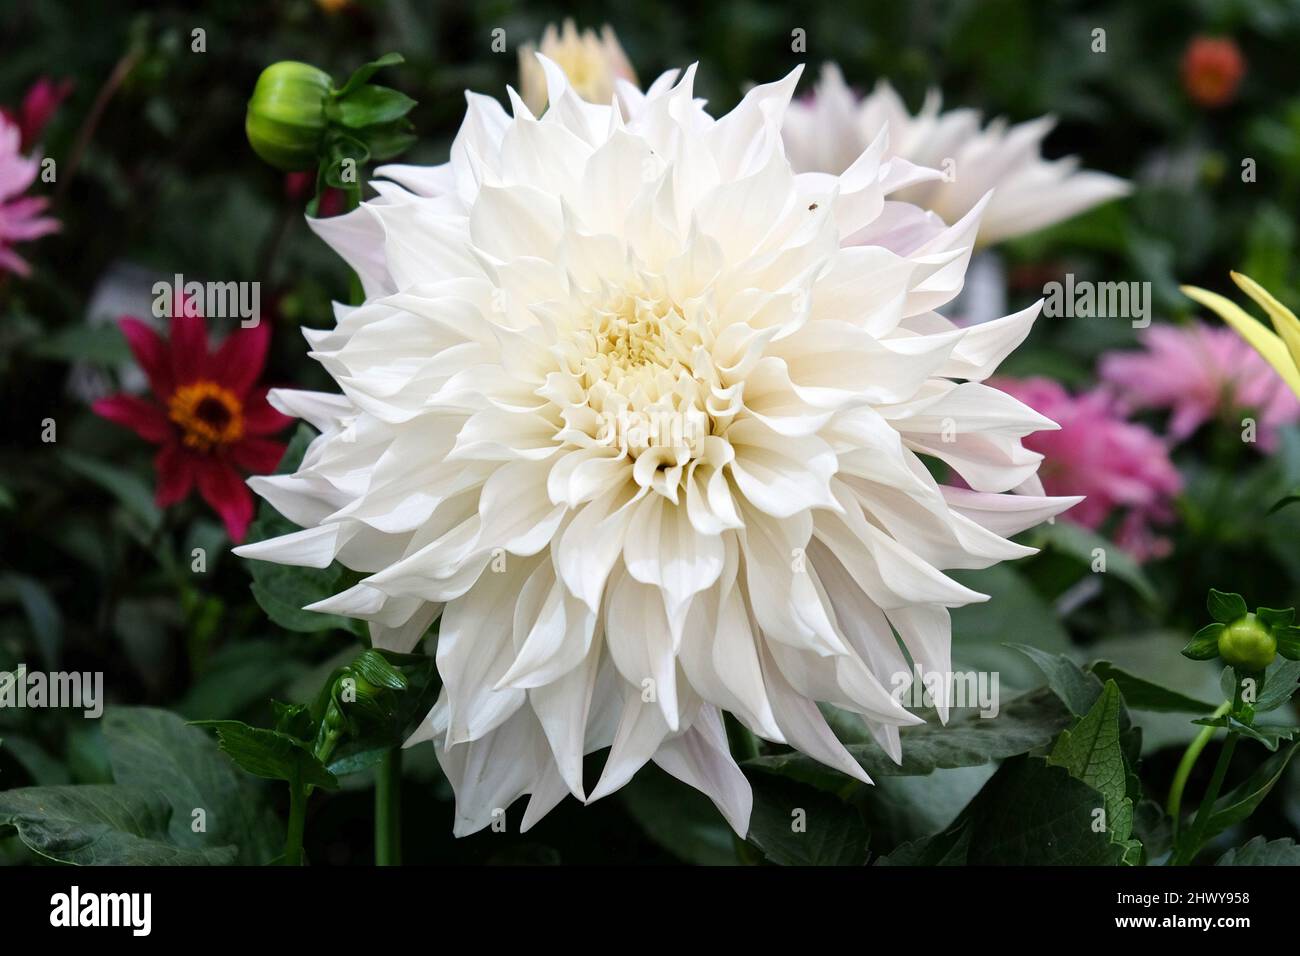 White decorative dahlia 'white perfection' in flower. Stock Photo